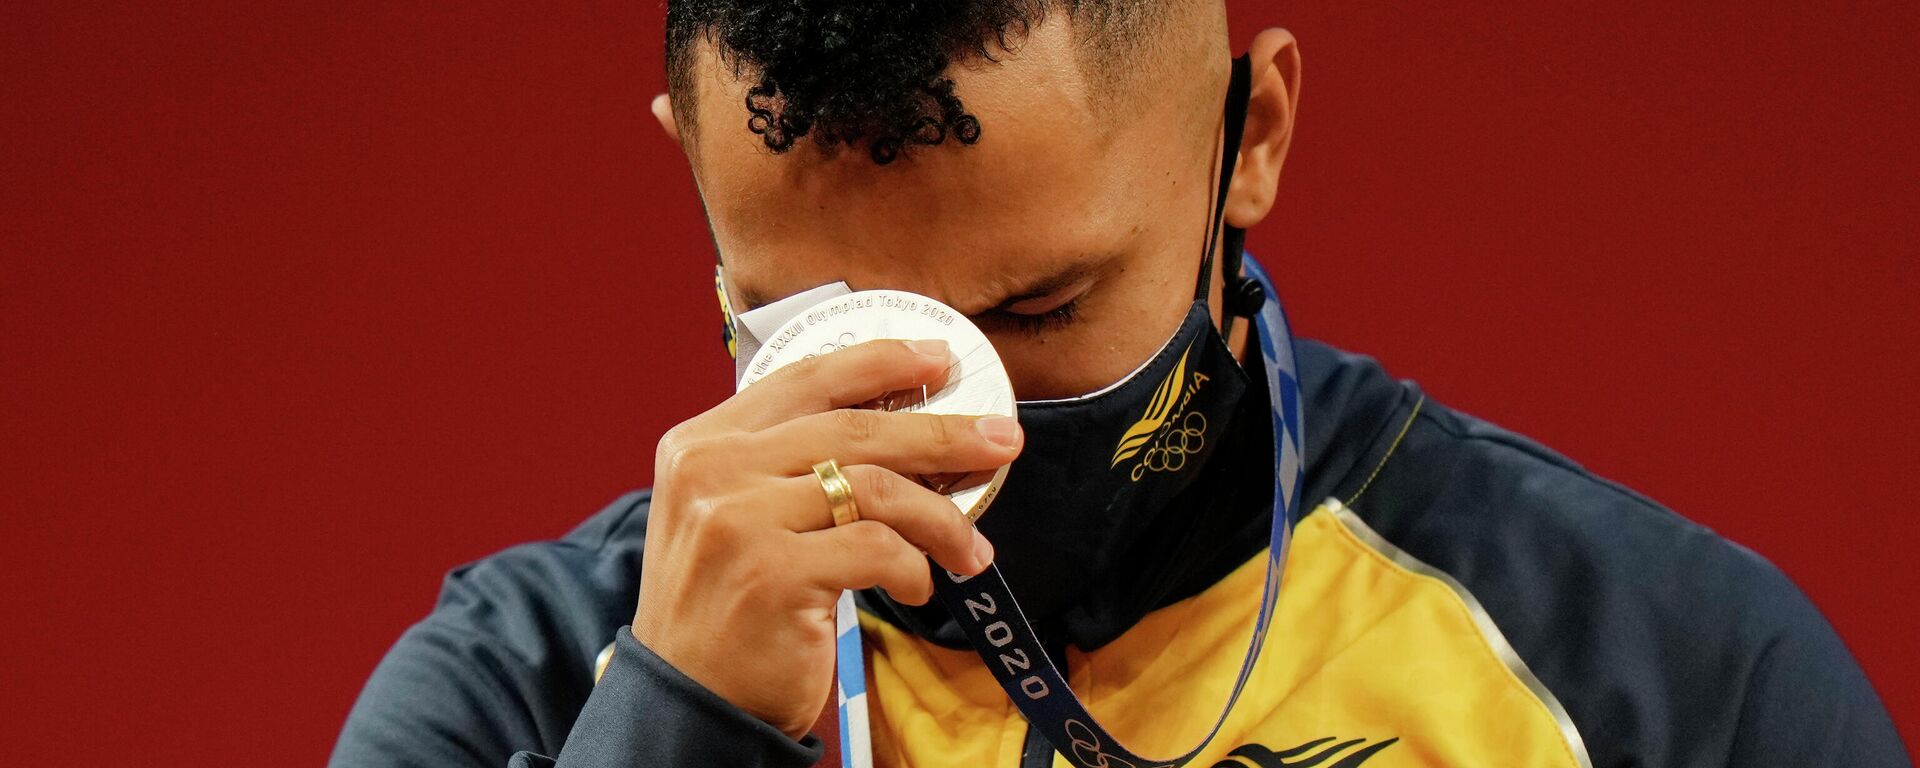 El colombiano Luis Javier Mosquera se hizo con la primera medalla de Colombia en los Juegos Olímpicos de Tokio 2020, al lograr la plata en la categoría de los 67 kilos masculinos de levantamiento de pesas - Sputnik Mundo, 1920, 25.07.2021